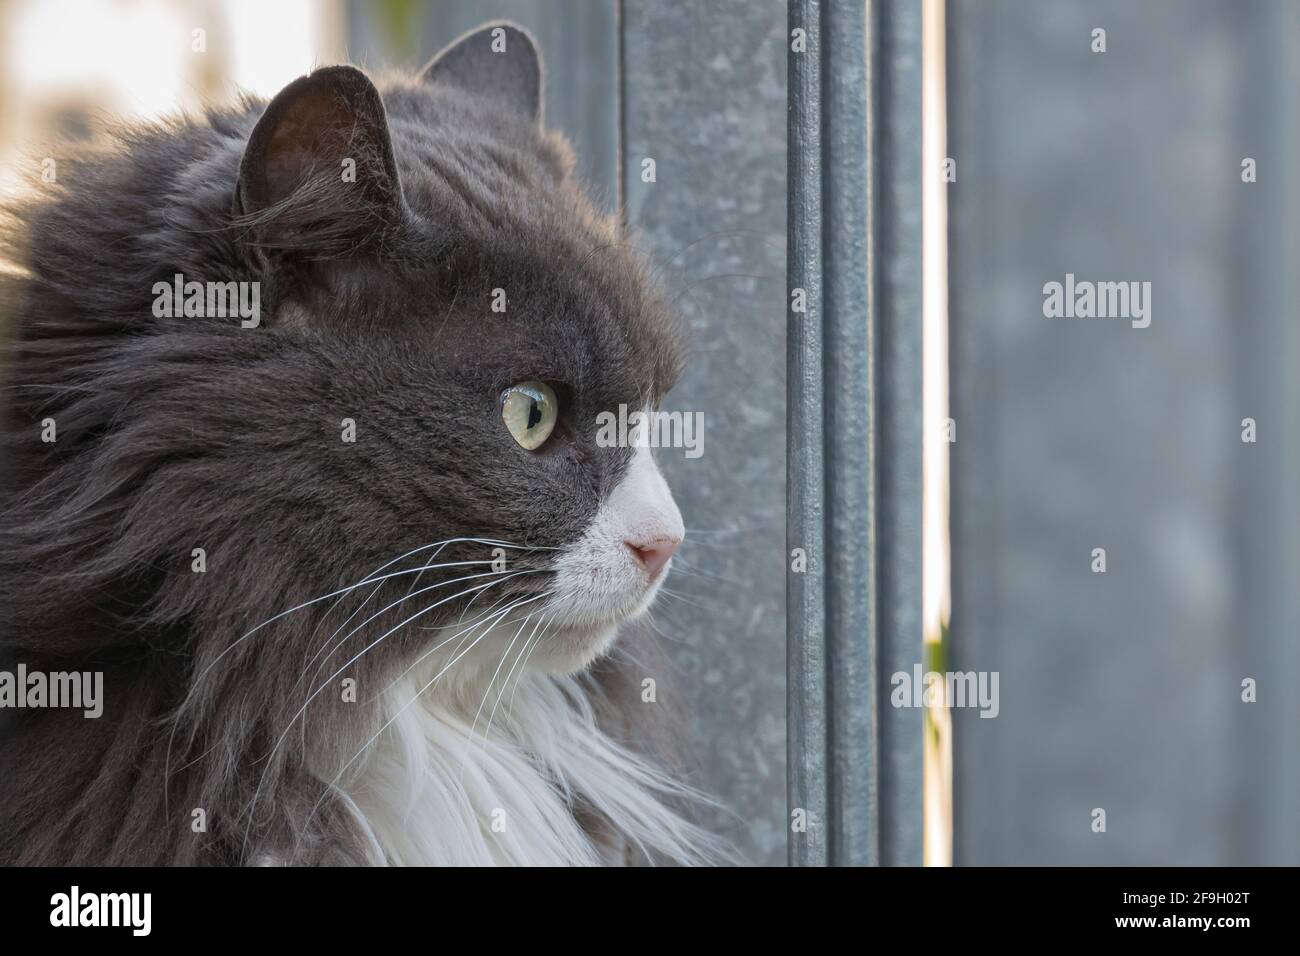 Porträt einer Katze mit langen grauen und weißen Haaren Im Freien Stockfoto